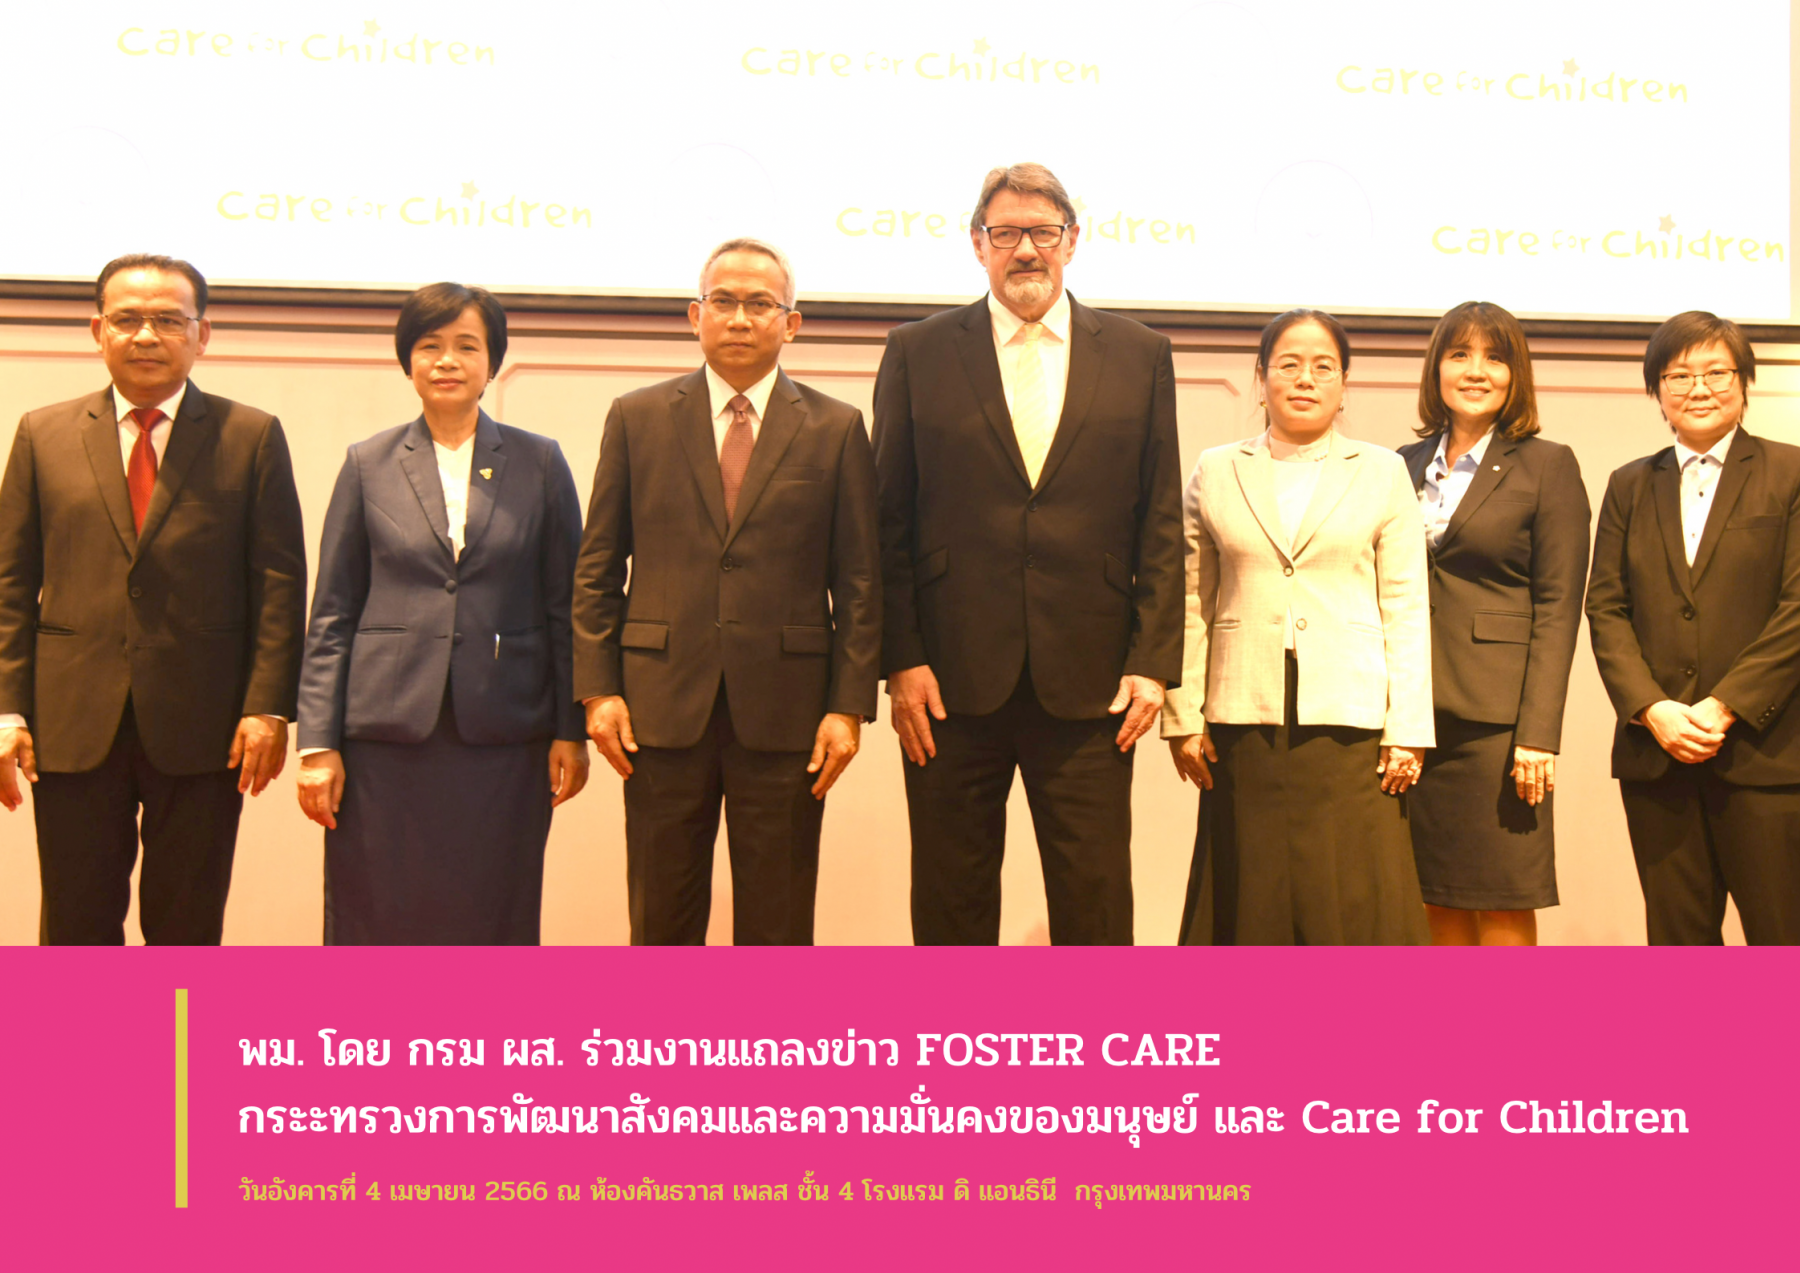 พม. โดย กรม ผส. ร่วมงานแถลงข่าว FOSTER CARE กระทรวงการพัฒนาสังคมและความมั่นคงของมนุษย์ และ Care for Children